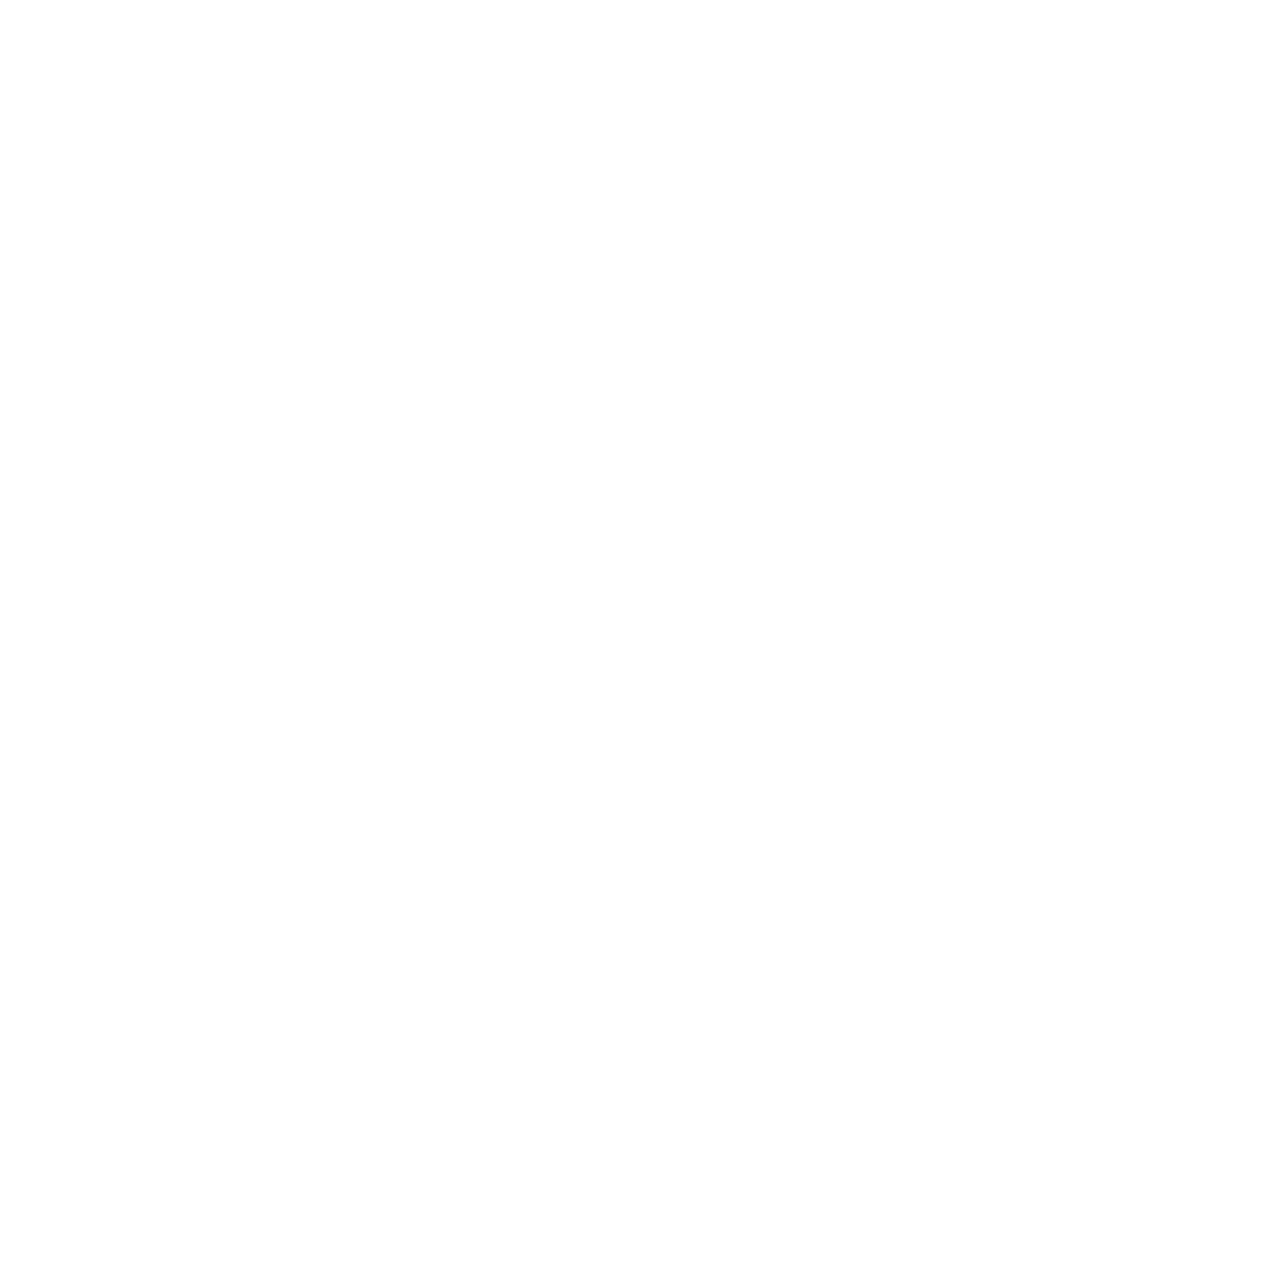 Lėktuvas, Siluetas, Klipas, Orlaivis, Grafika, Piešimas, Eskizas, Lėktuvas, Aviacija, Simbolis